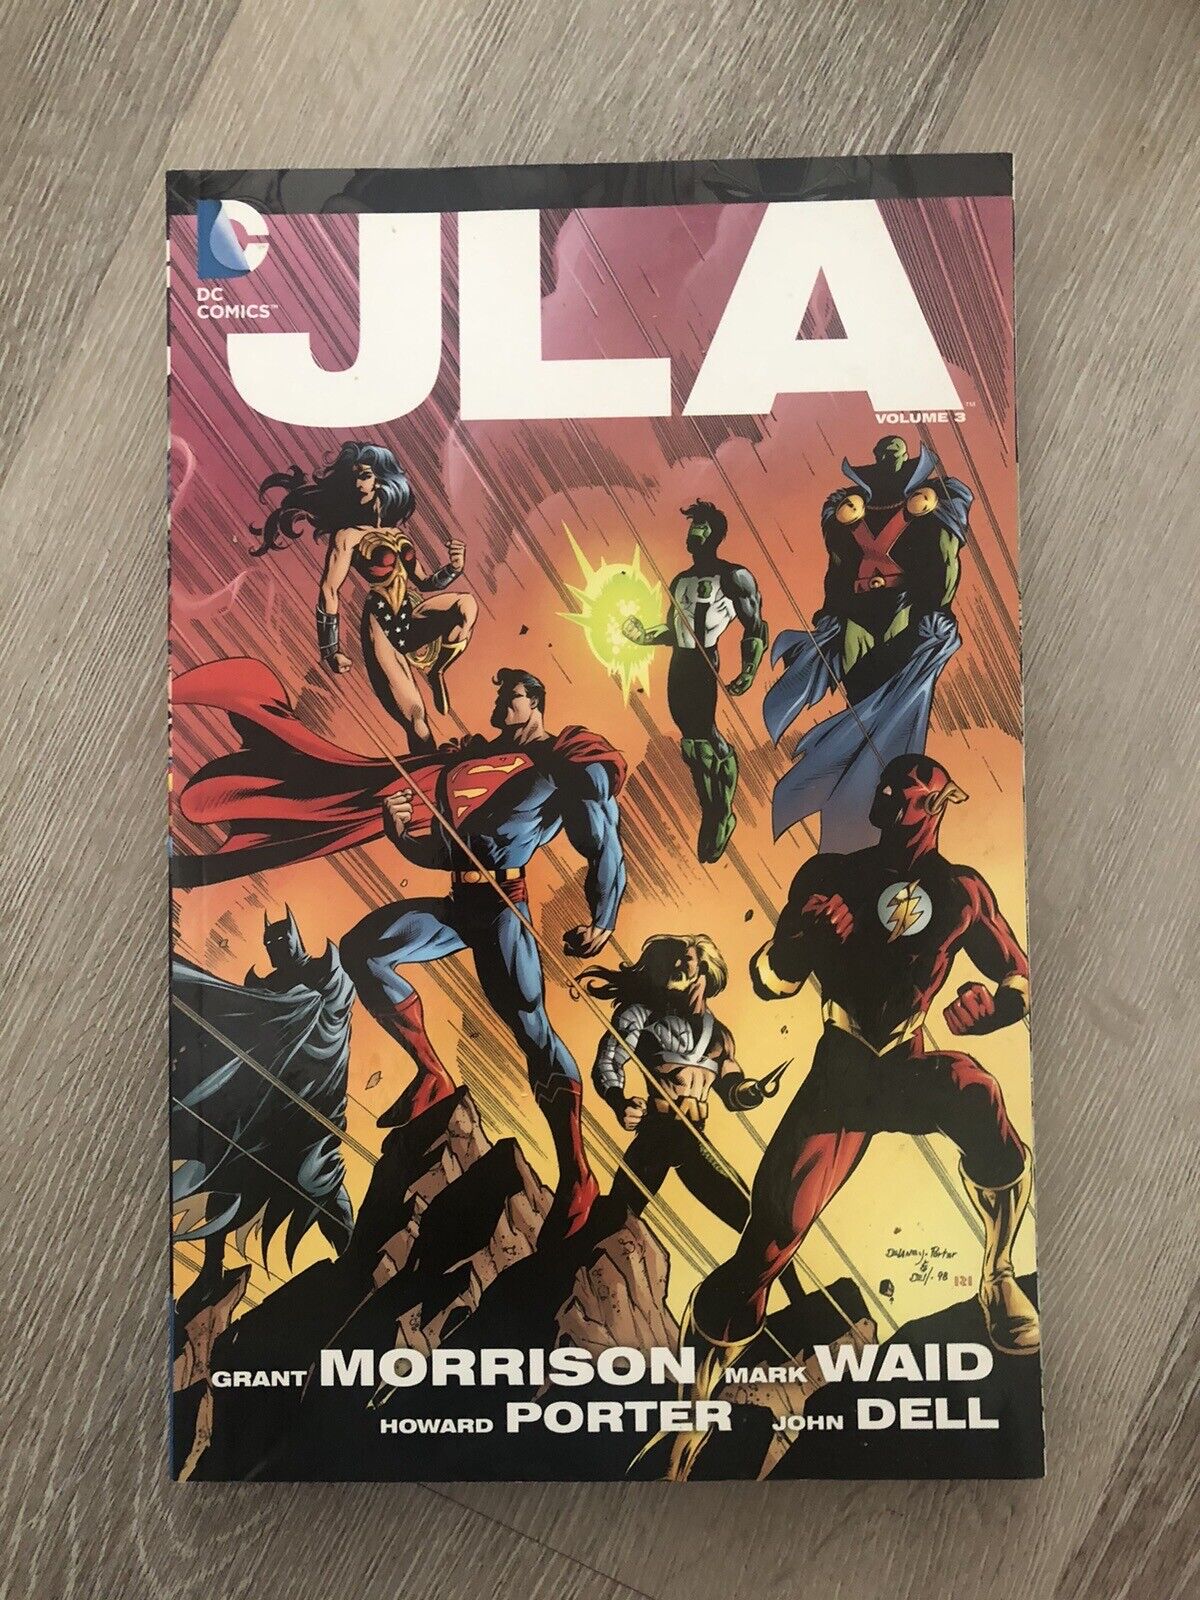 JLA #3 (DC Comics, 2012)